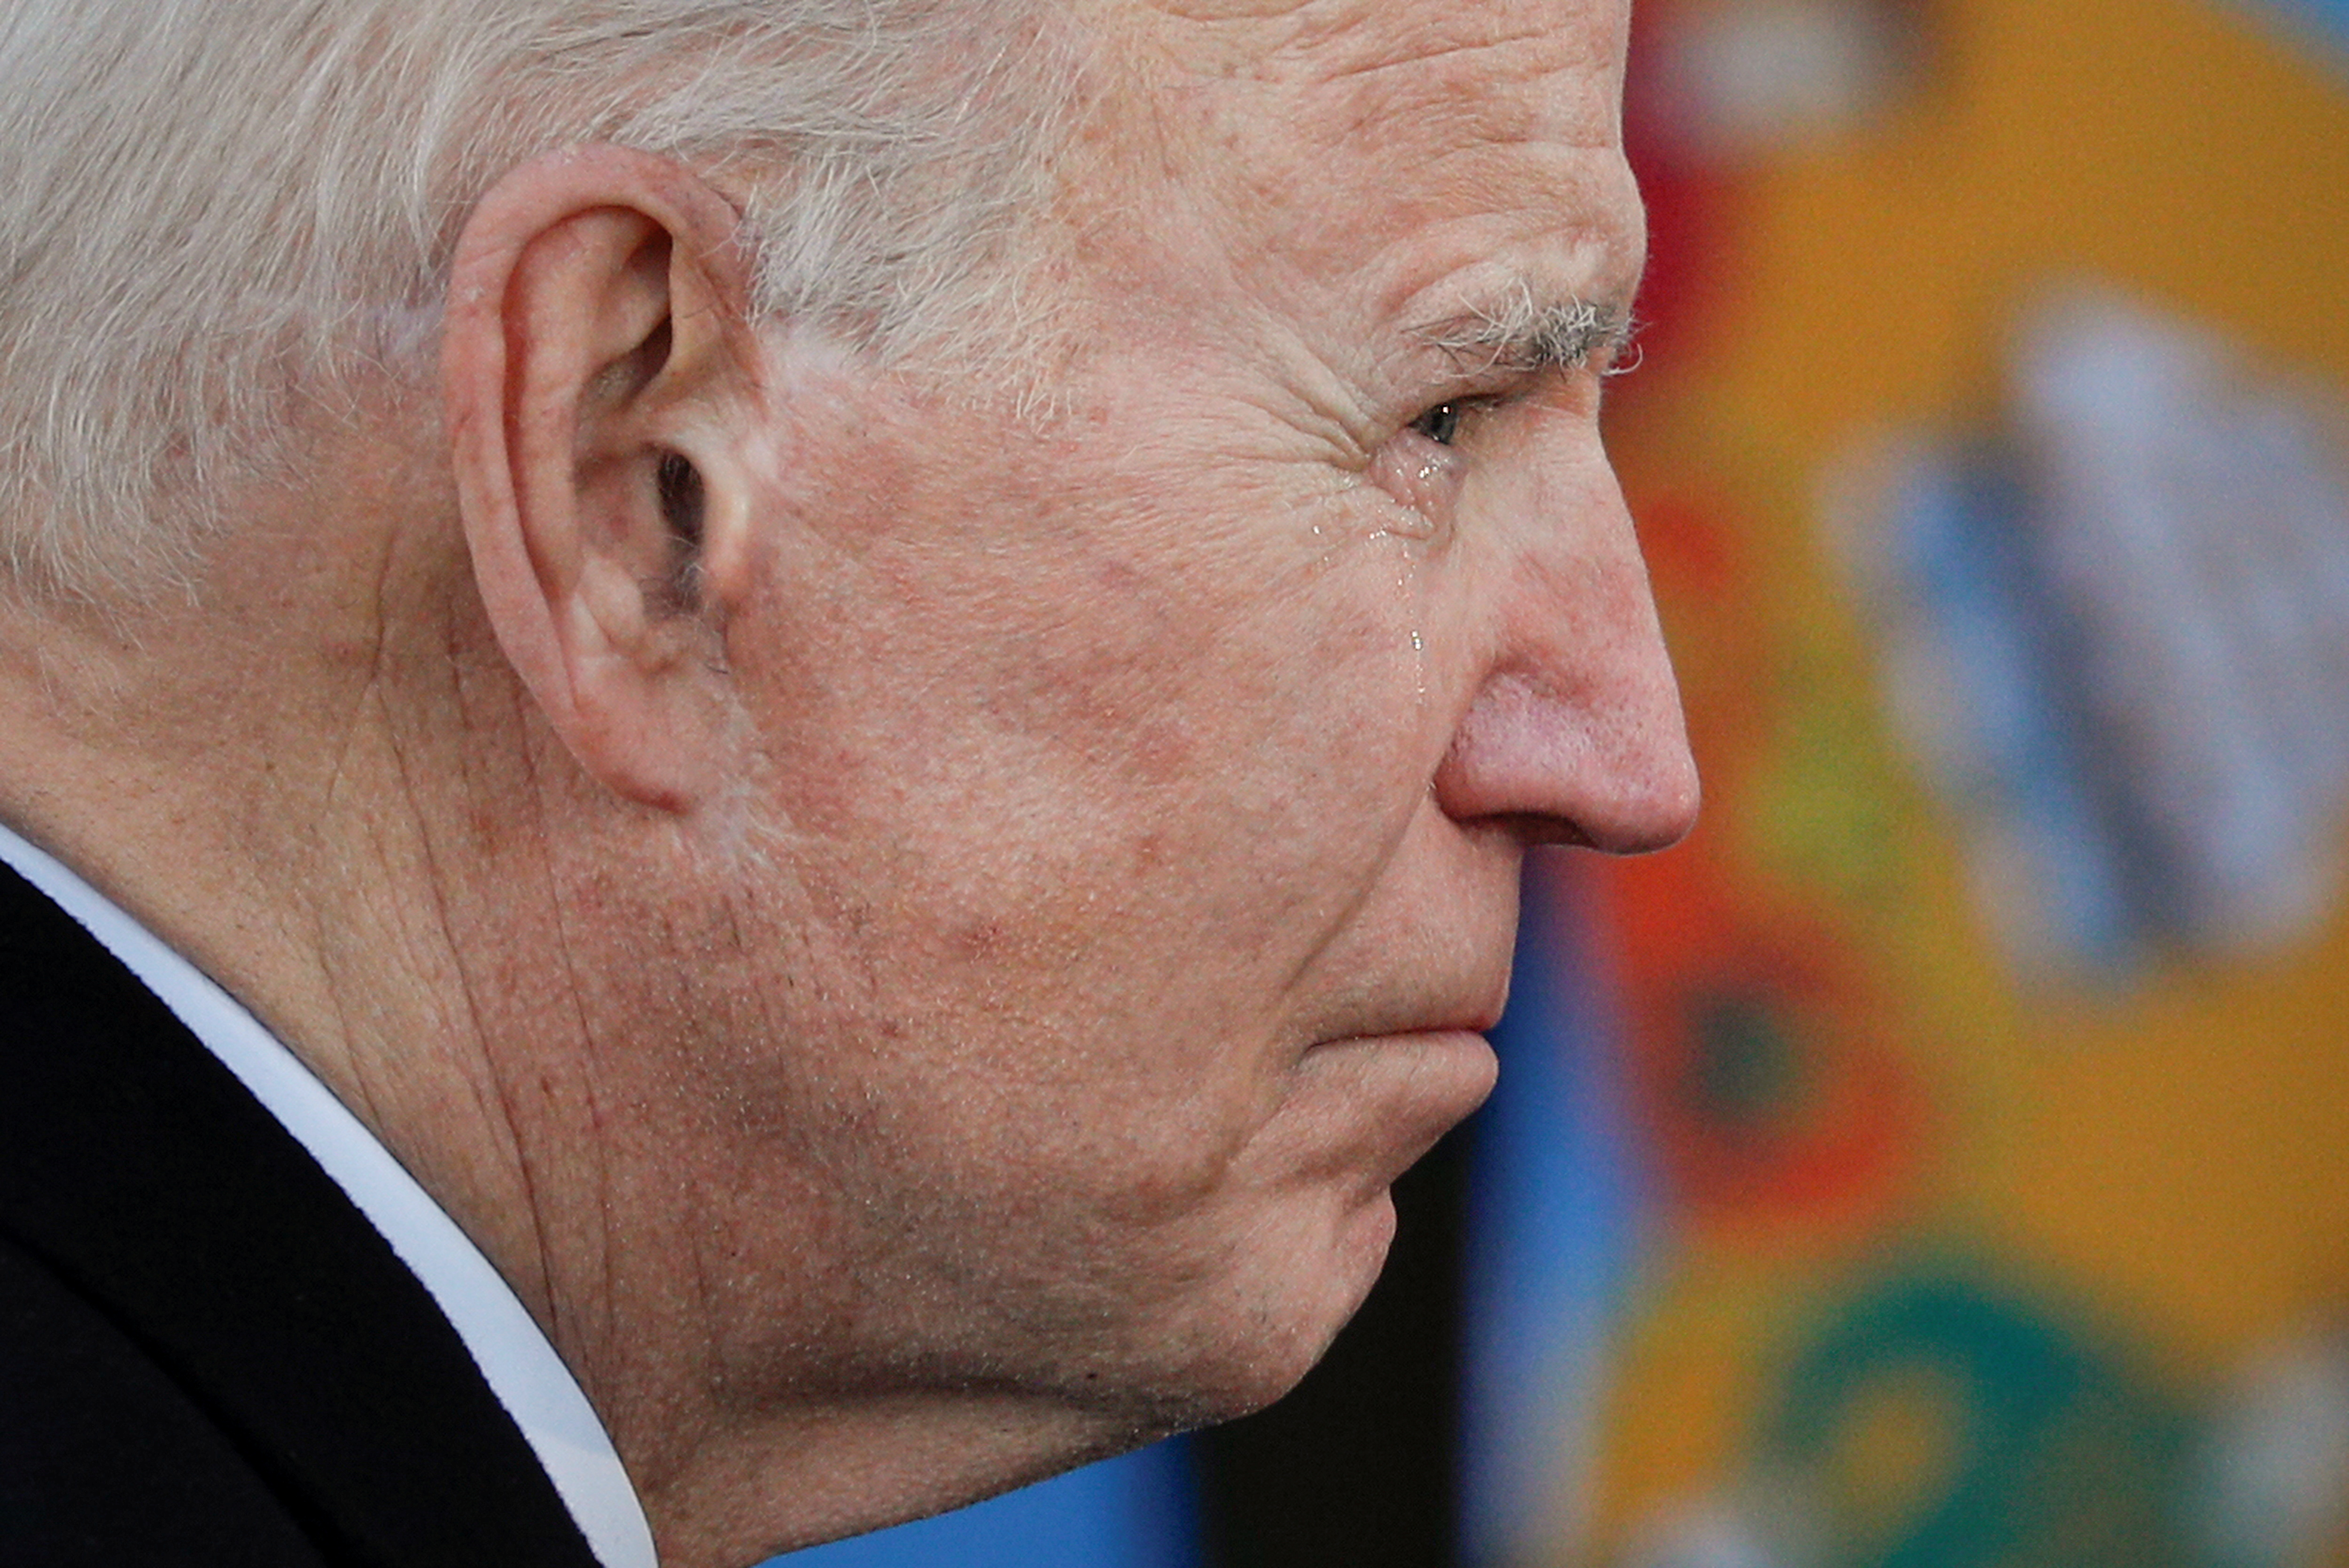 Biden asume —expresó su jefe de gabinete— en el medio de “cuatro crisis que se superponen y se agravan: la crisis de COVID-19, la crisis económica resultante, la crisis del clima y una crisis de igualdad racial” (Reuters/ Tom Brenner)